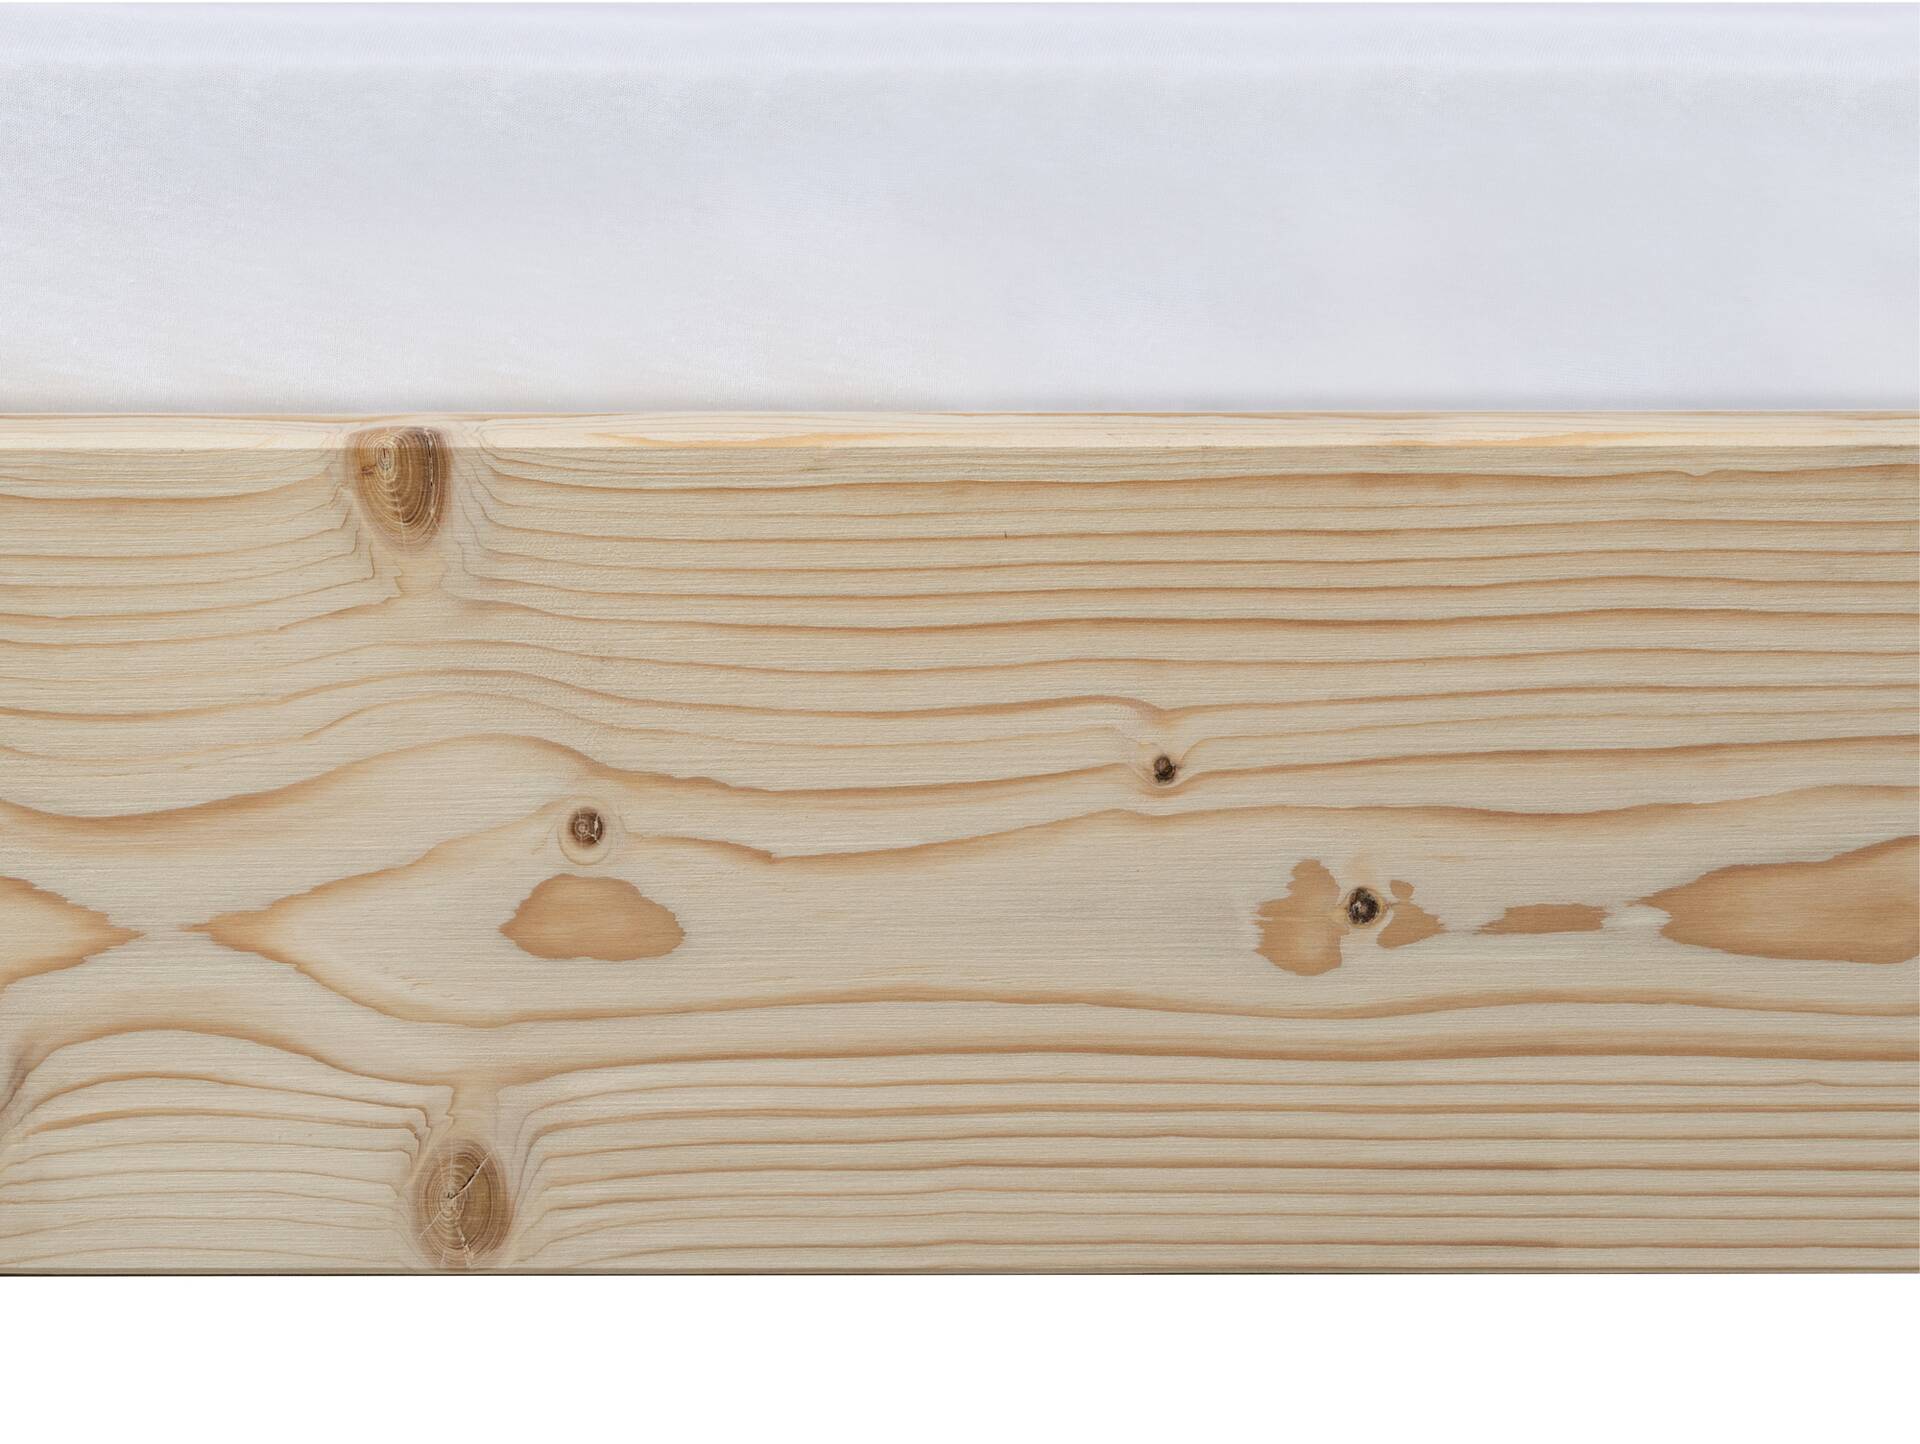 LUKY Kufenbett mit Polsterkopfteil, Material Massivholz, Fichte massiv, Kufen weiss 140 x 200 cm | natur | Kunstleder Schwarz